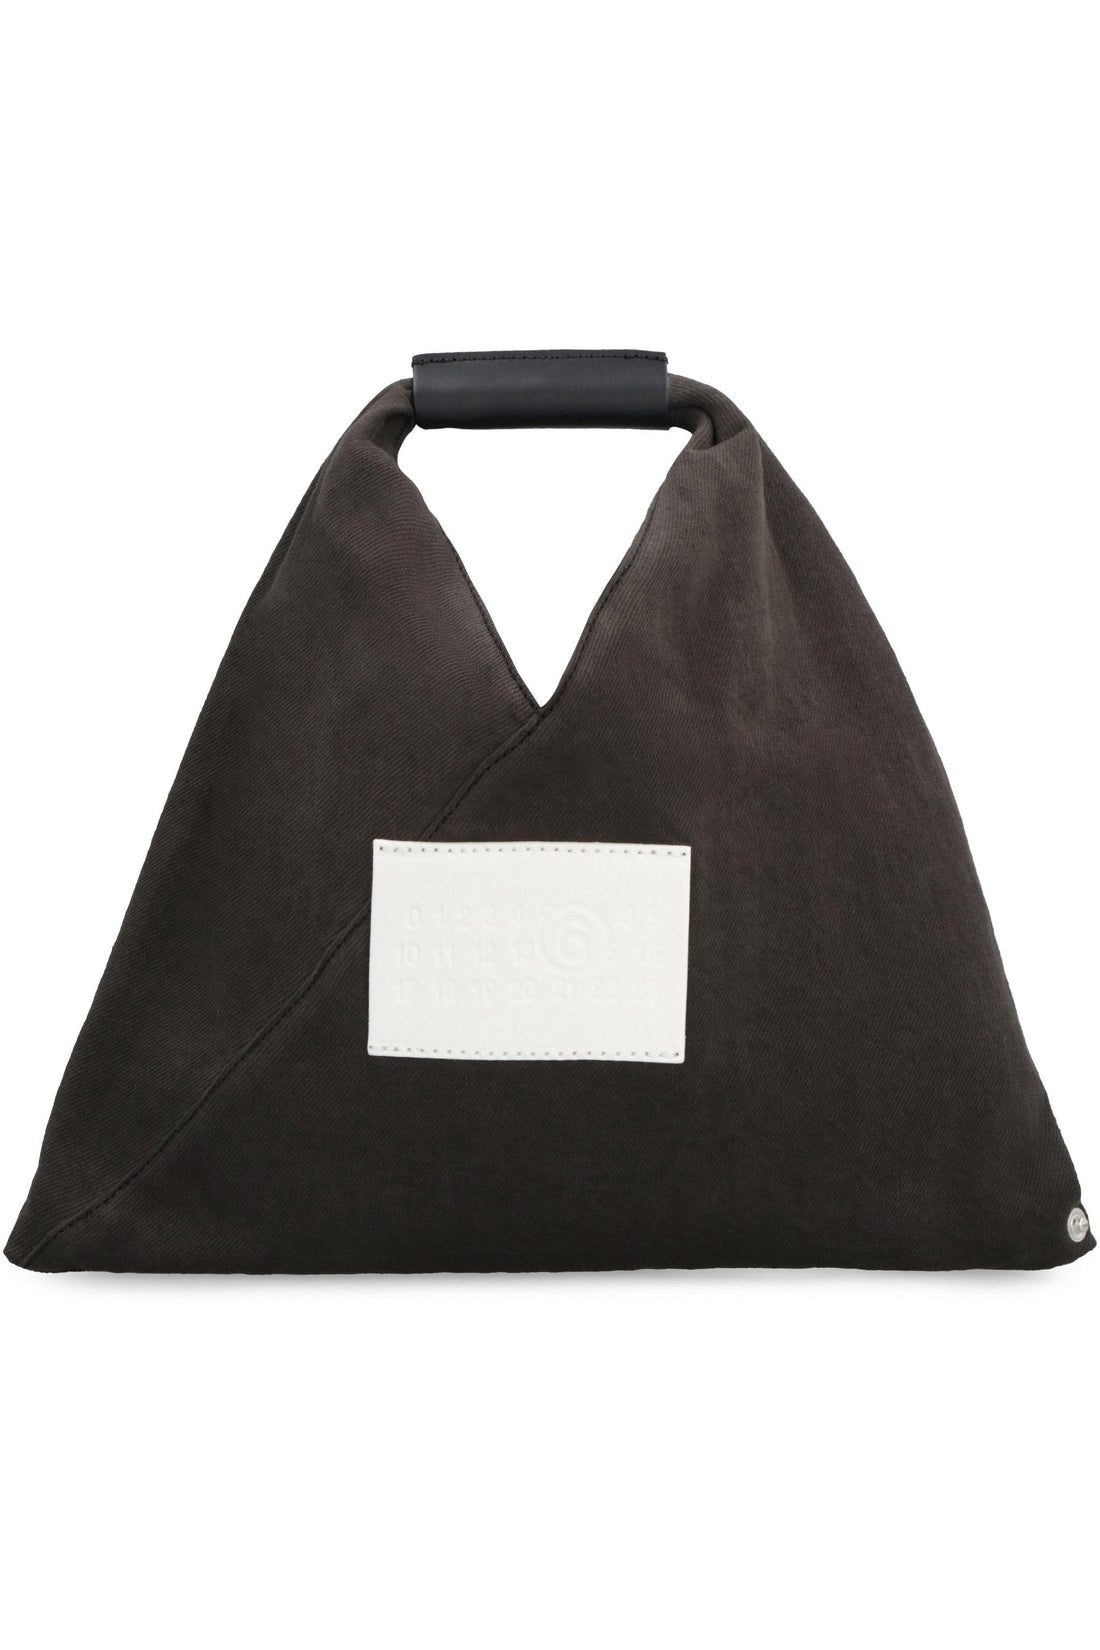 MM6 Maison Margiela-OUTLET-SALE-Japanese mini handbag-ARCHIVIST